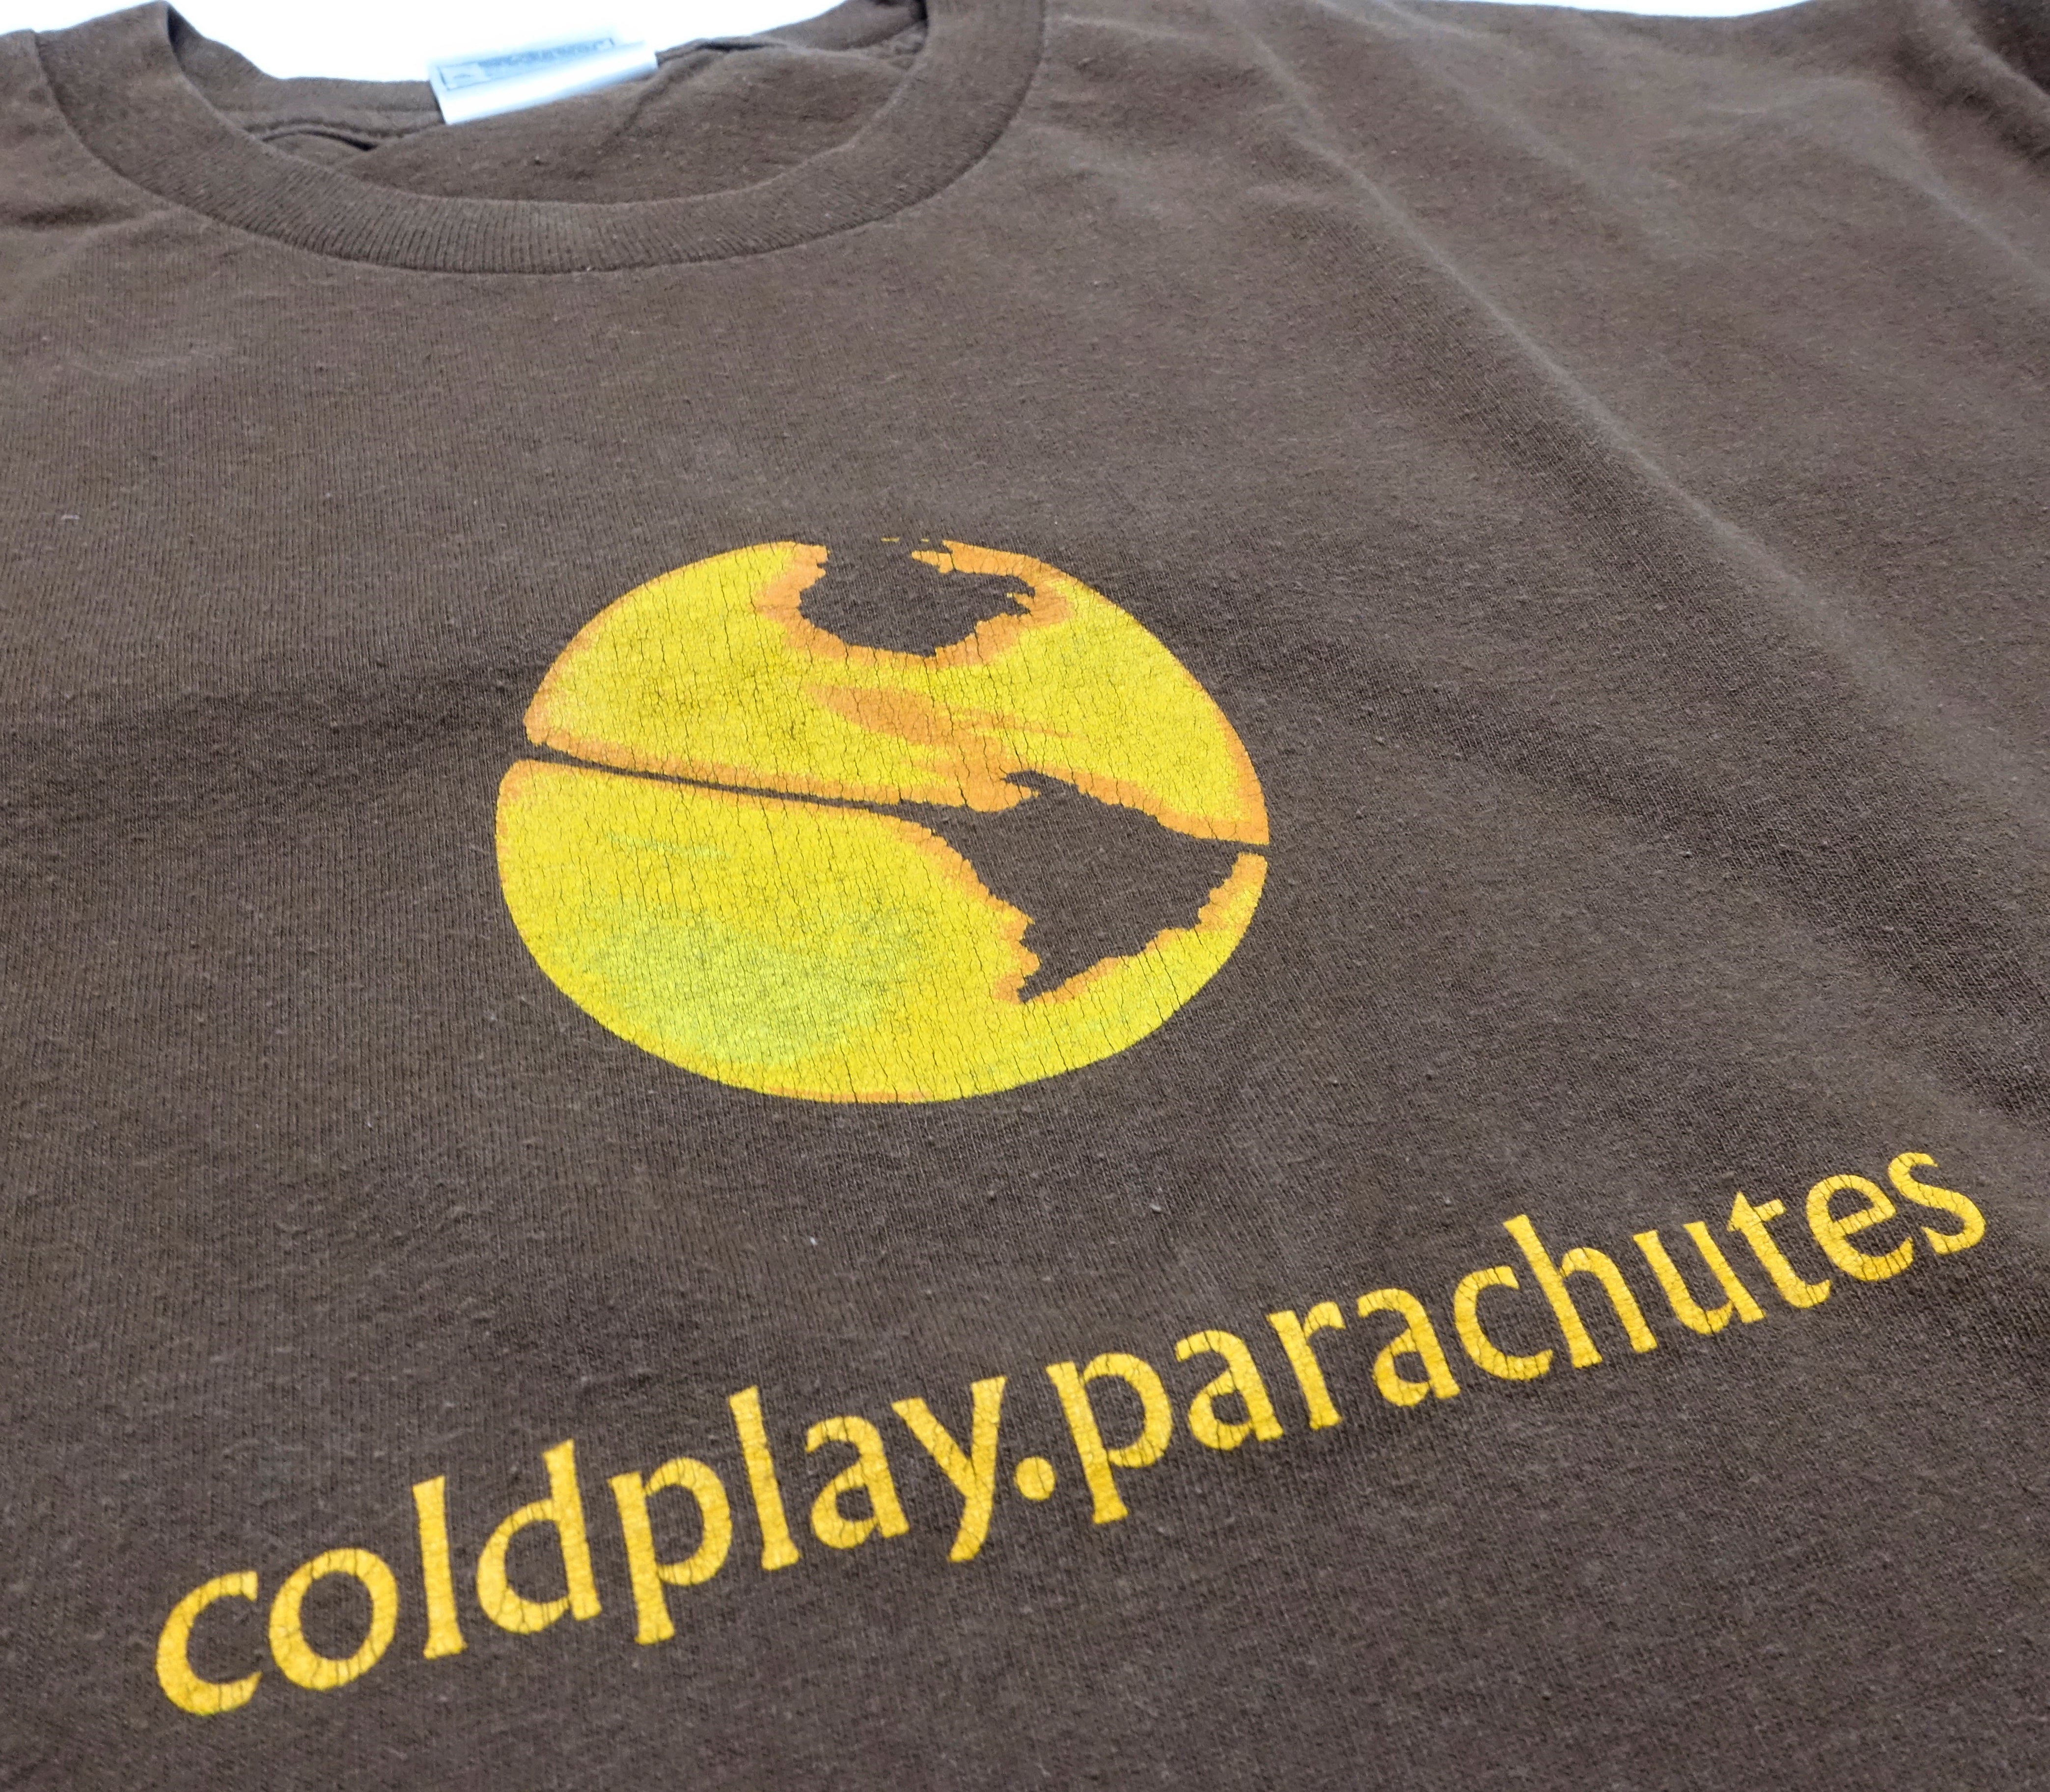 Coldplay - Parachutes 2000 Tour Shirt Size XL